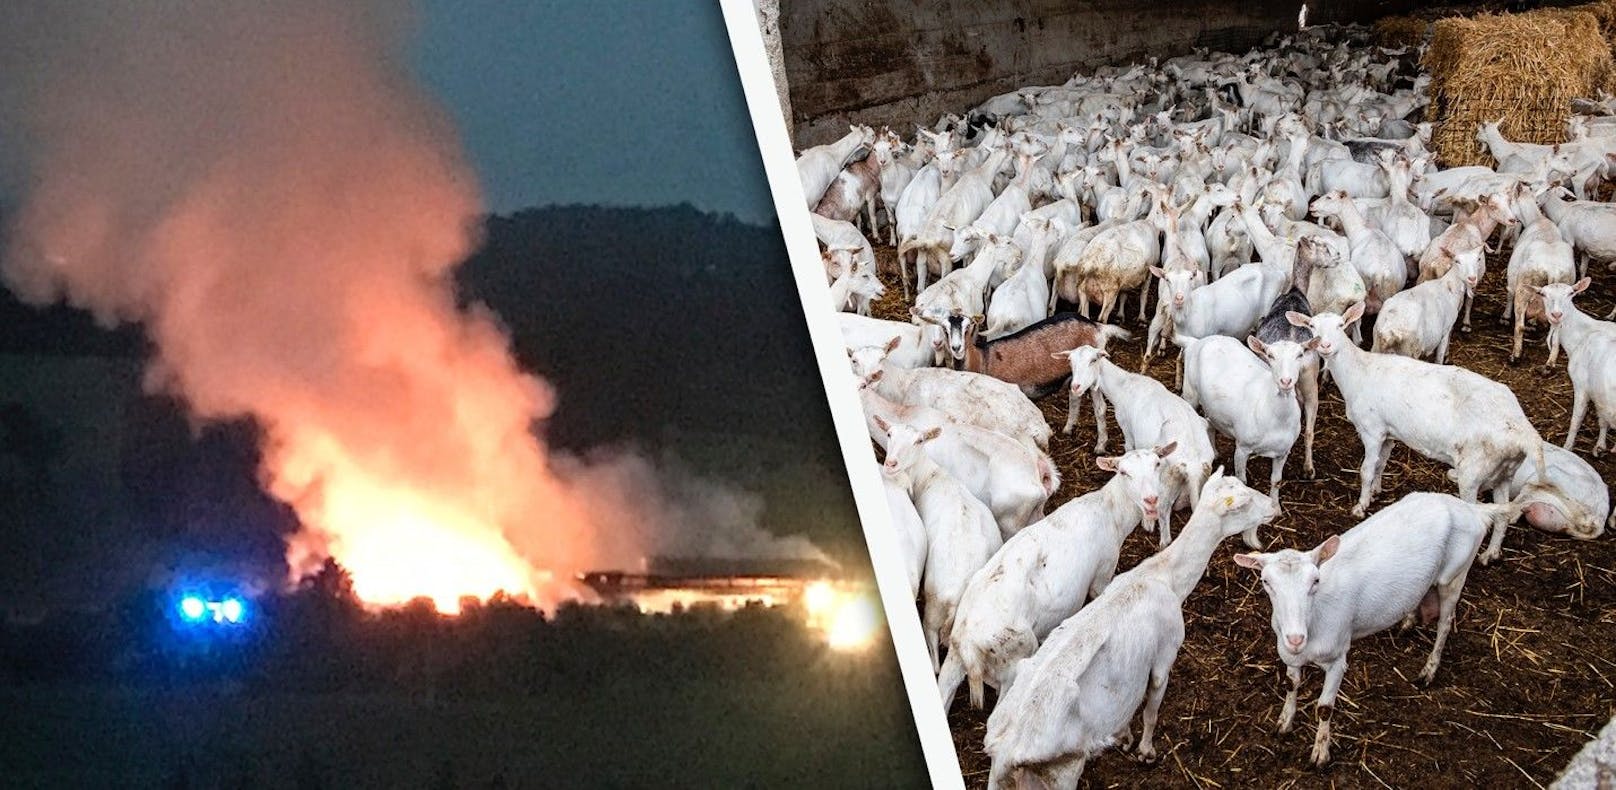 Dienstag in den frühen Morgenstunden wurden auf einem Bauernhof im Bezirk Kirchdorf etliche Ziegen gerettet.